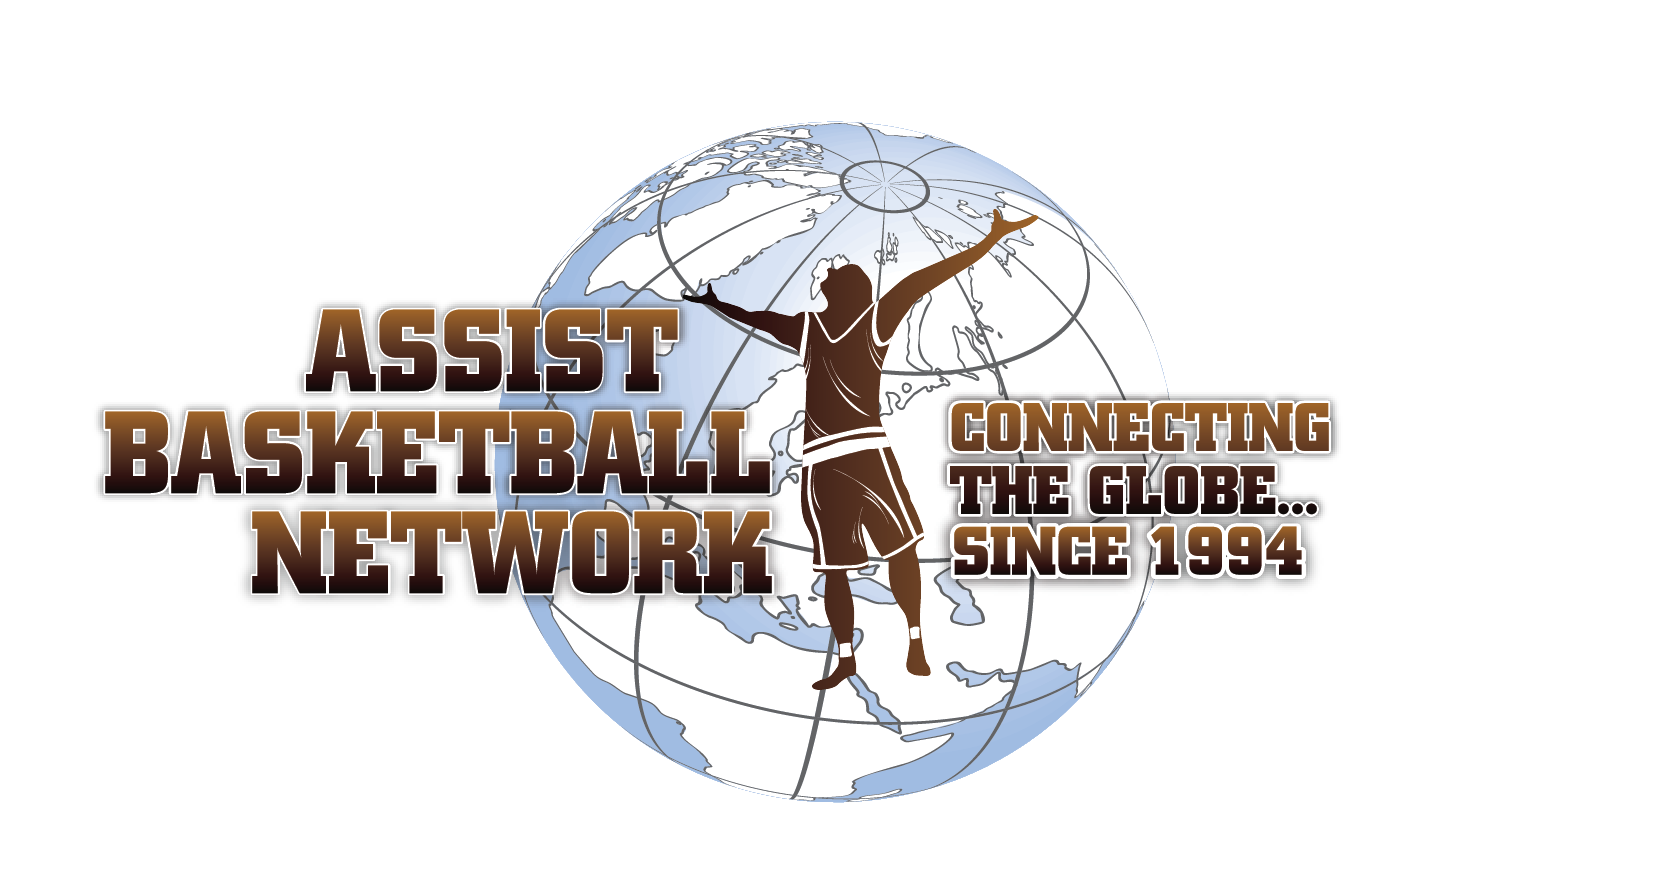 Assist Basketball Network